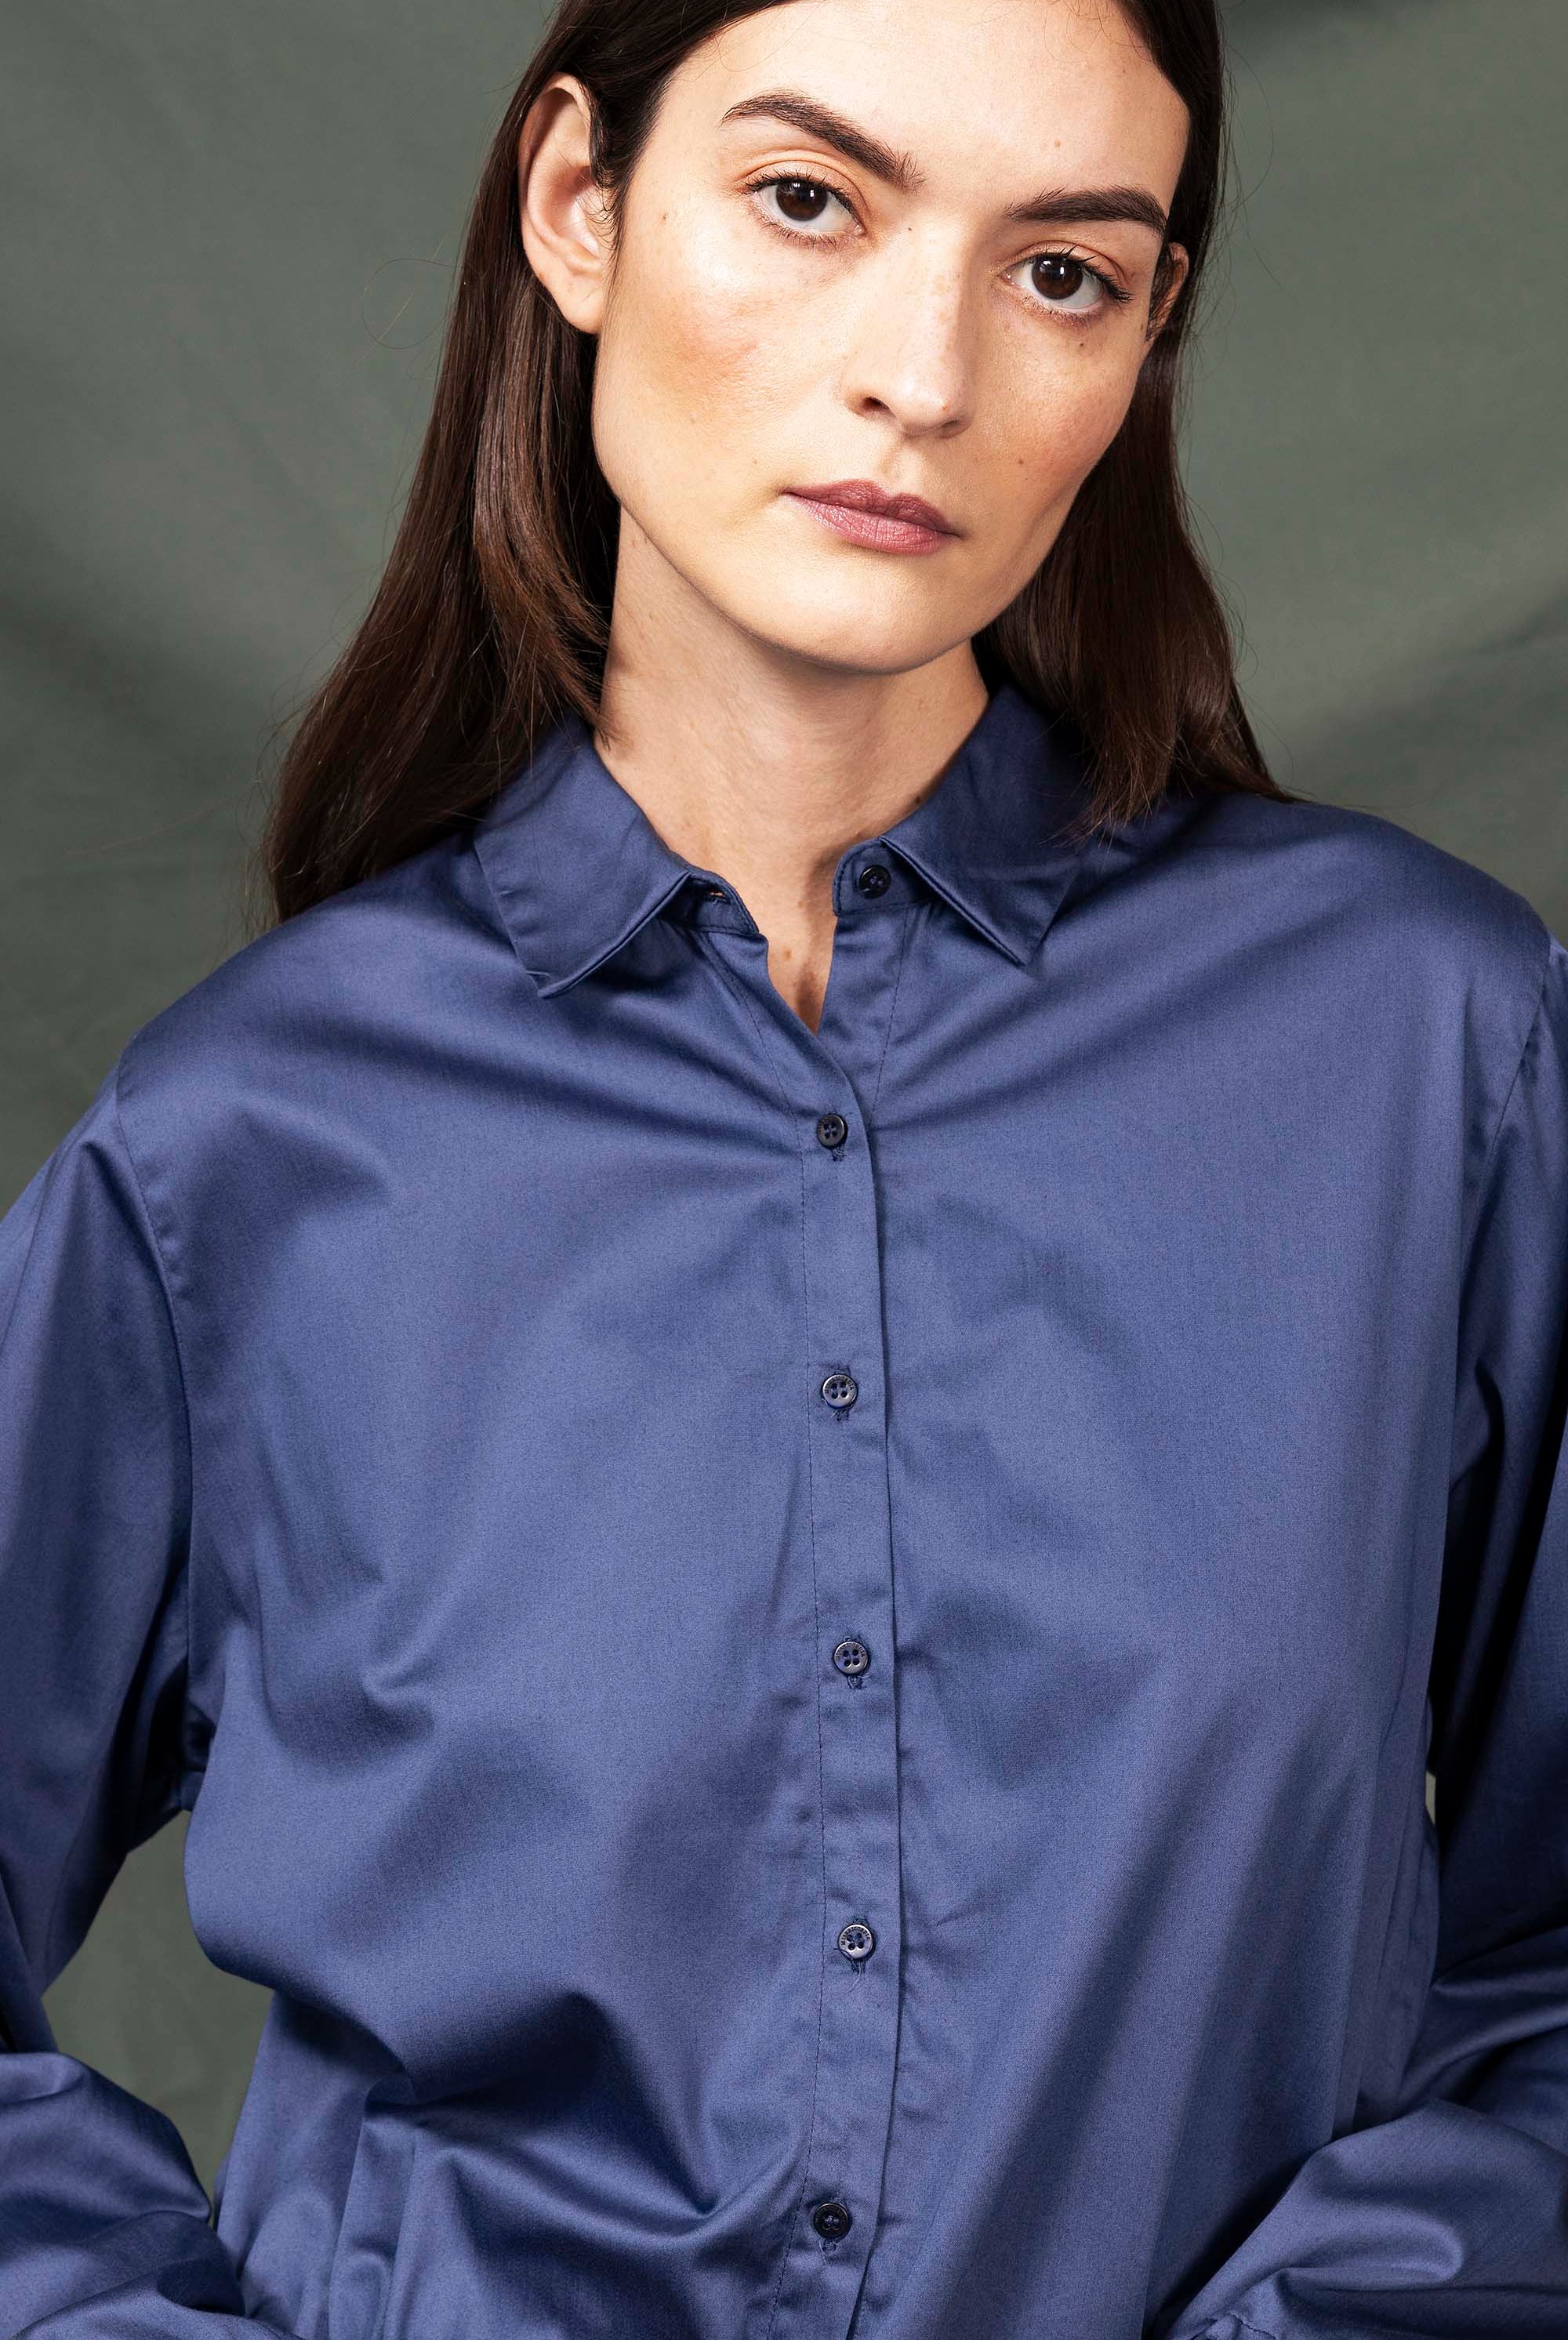 Chemise Beatriz Bleu classique intemporelle, la chemise dessine la silhouette